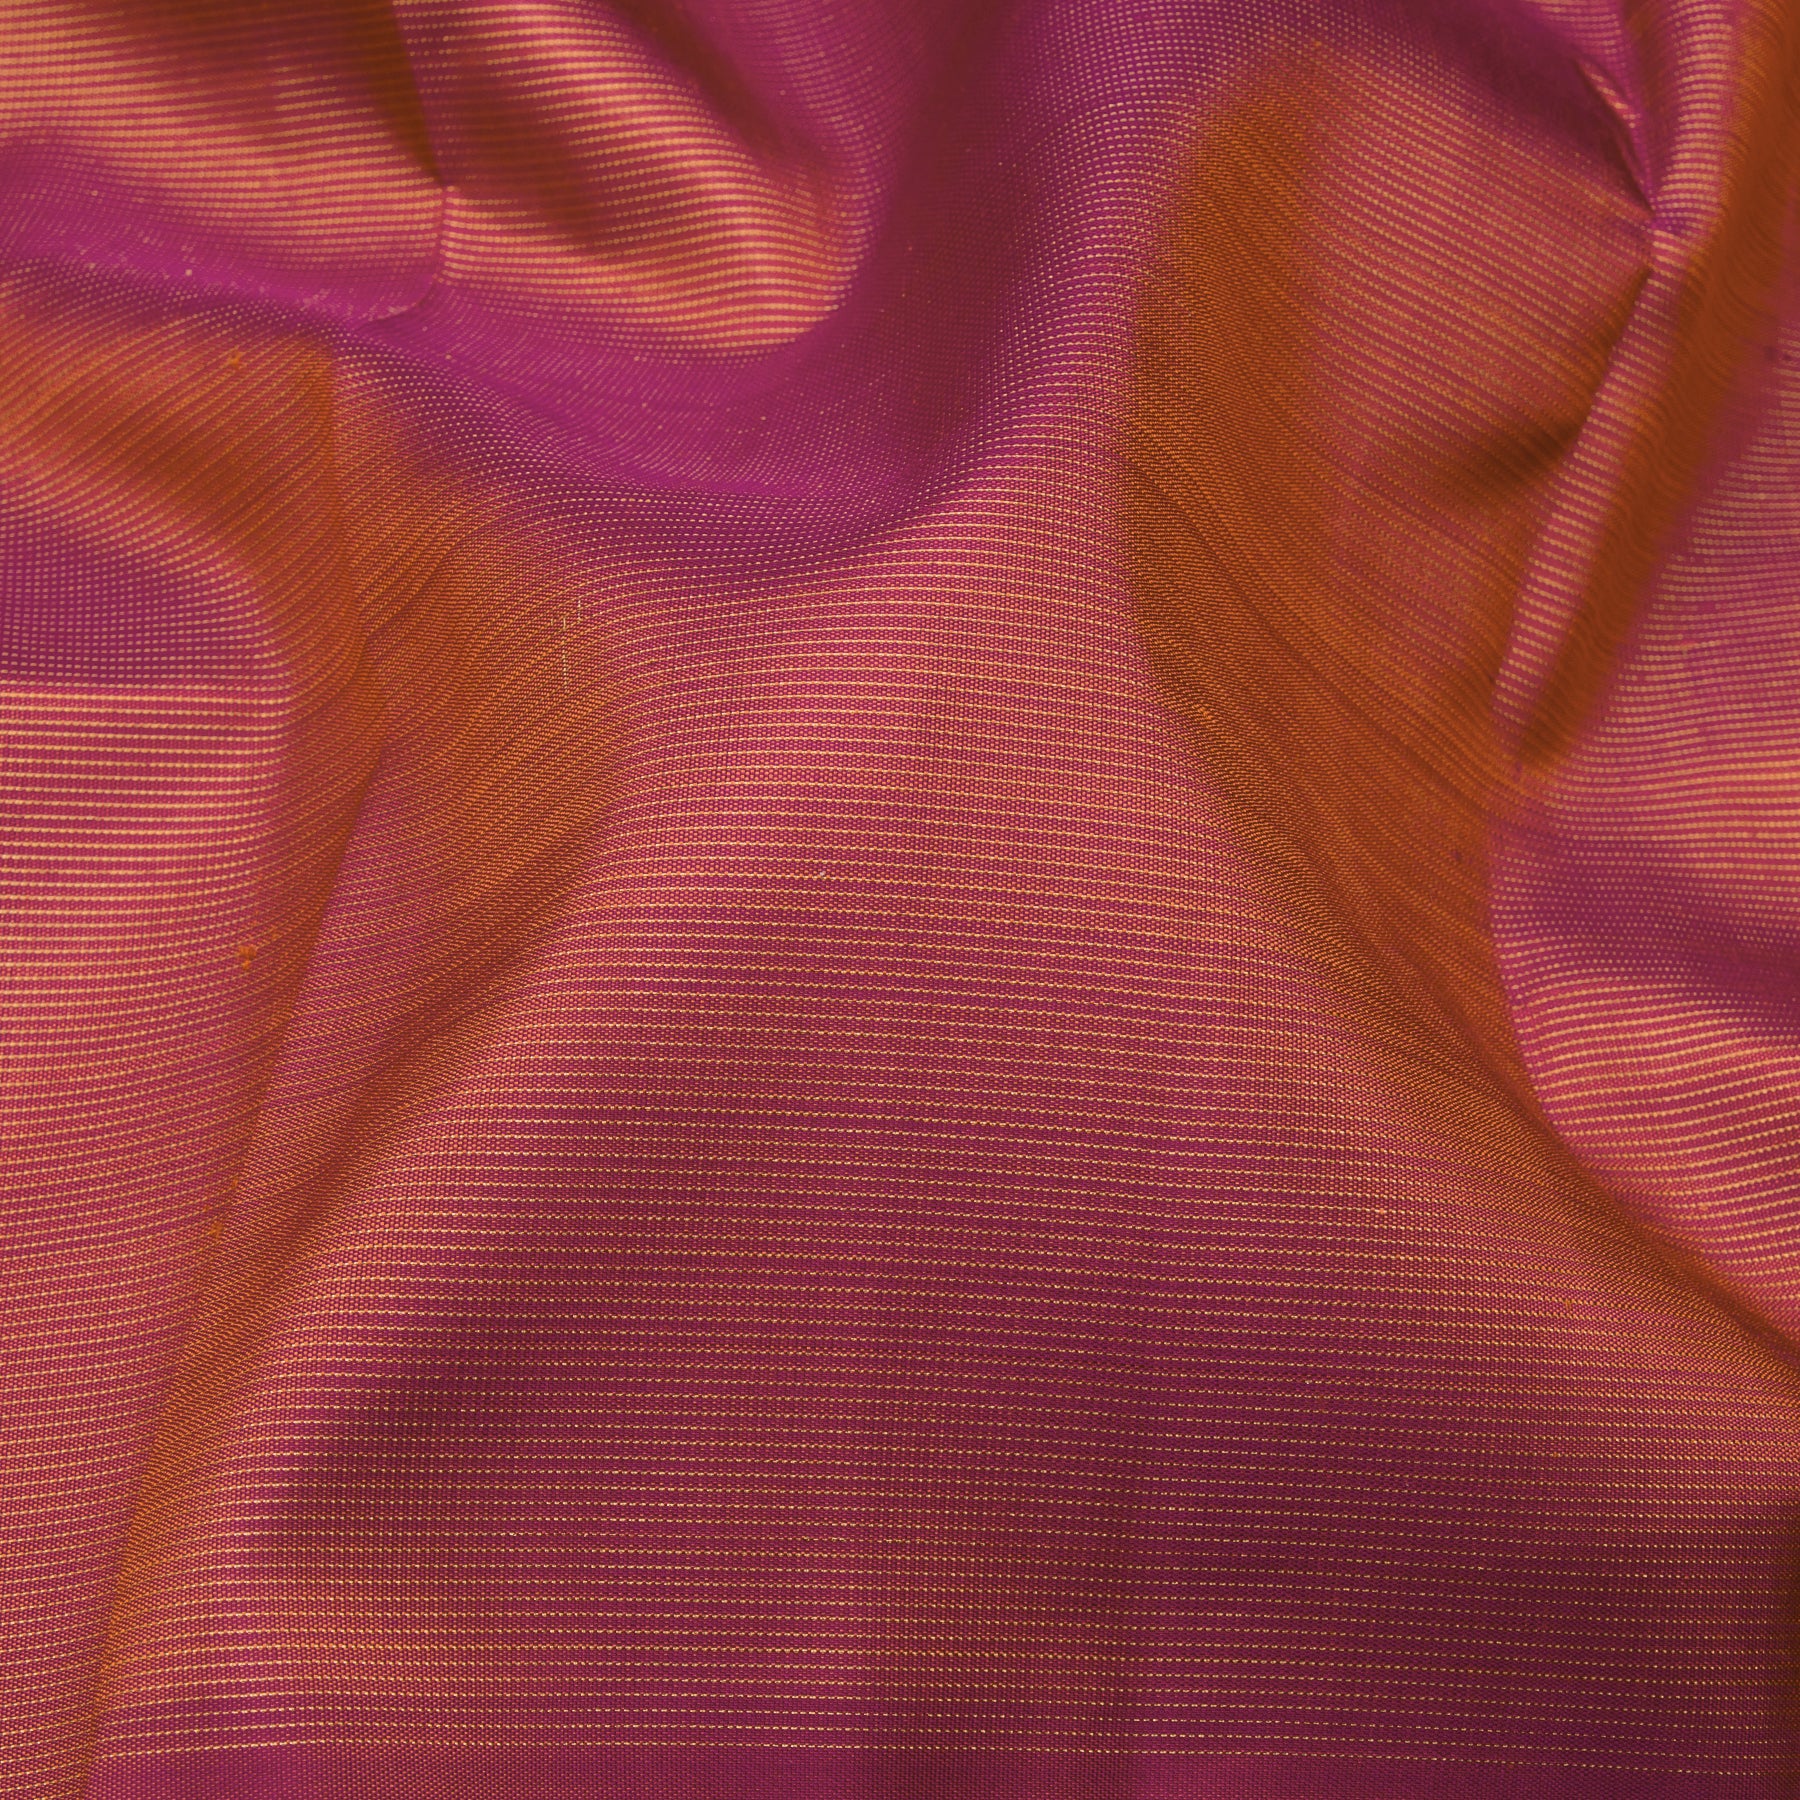 Kanakavalli Kanjivaram Silk Sari 23-041-HS001-13147 - Fabric View